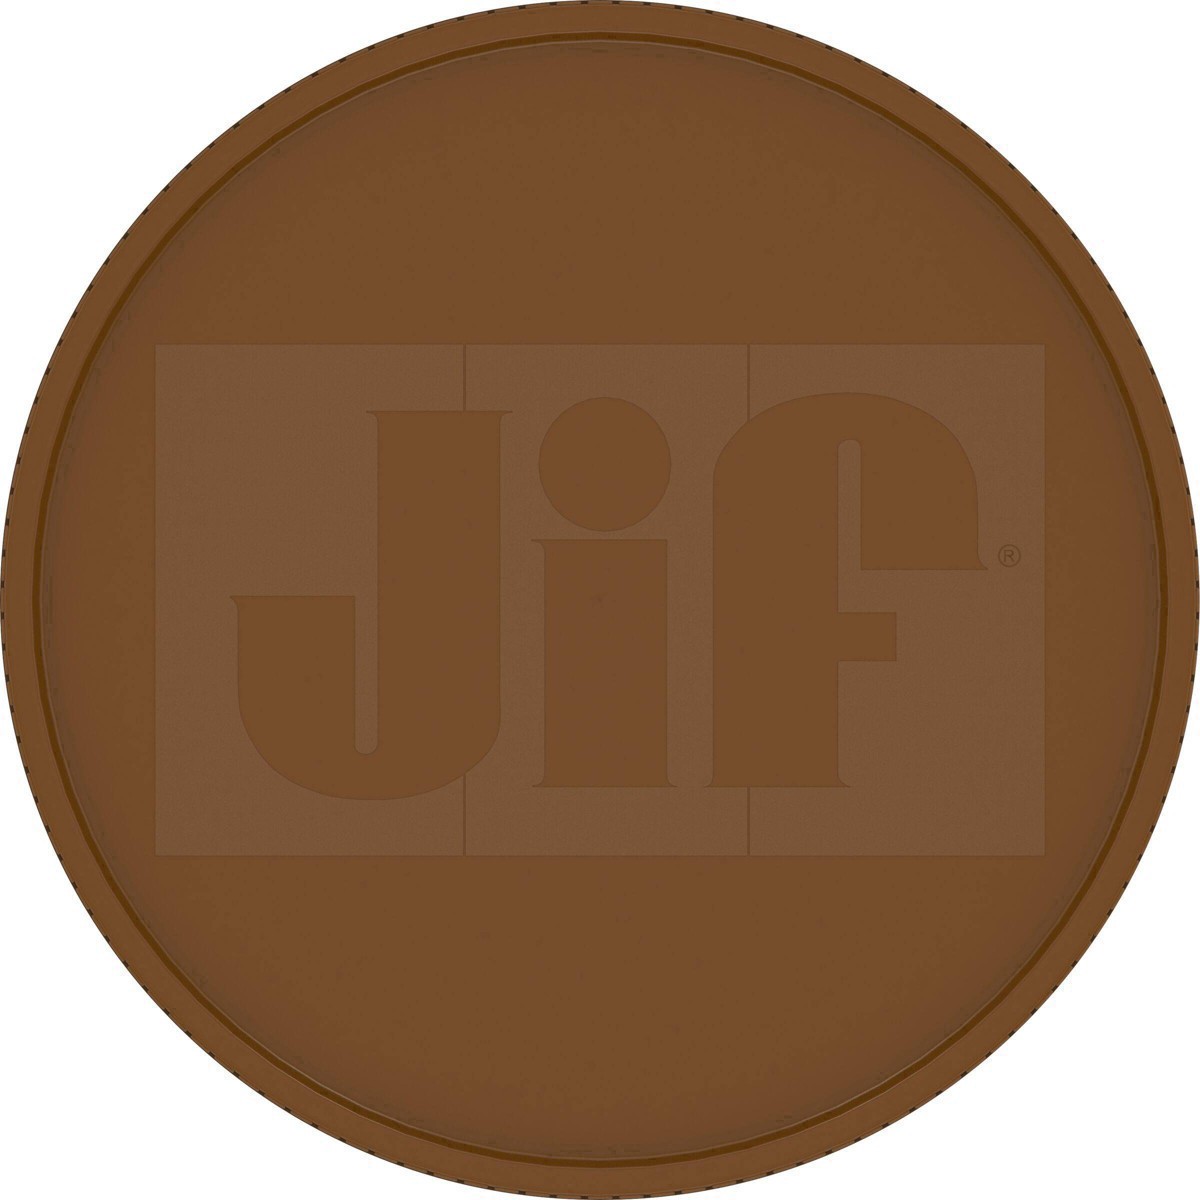 slide 40 of 41, Jif Natural Crunchy Peanut Butter, 16 oz